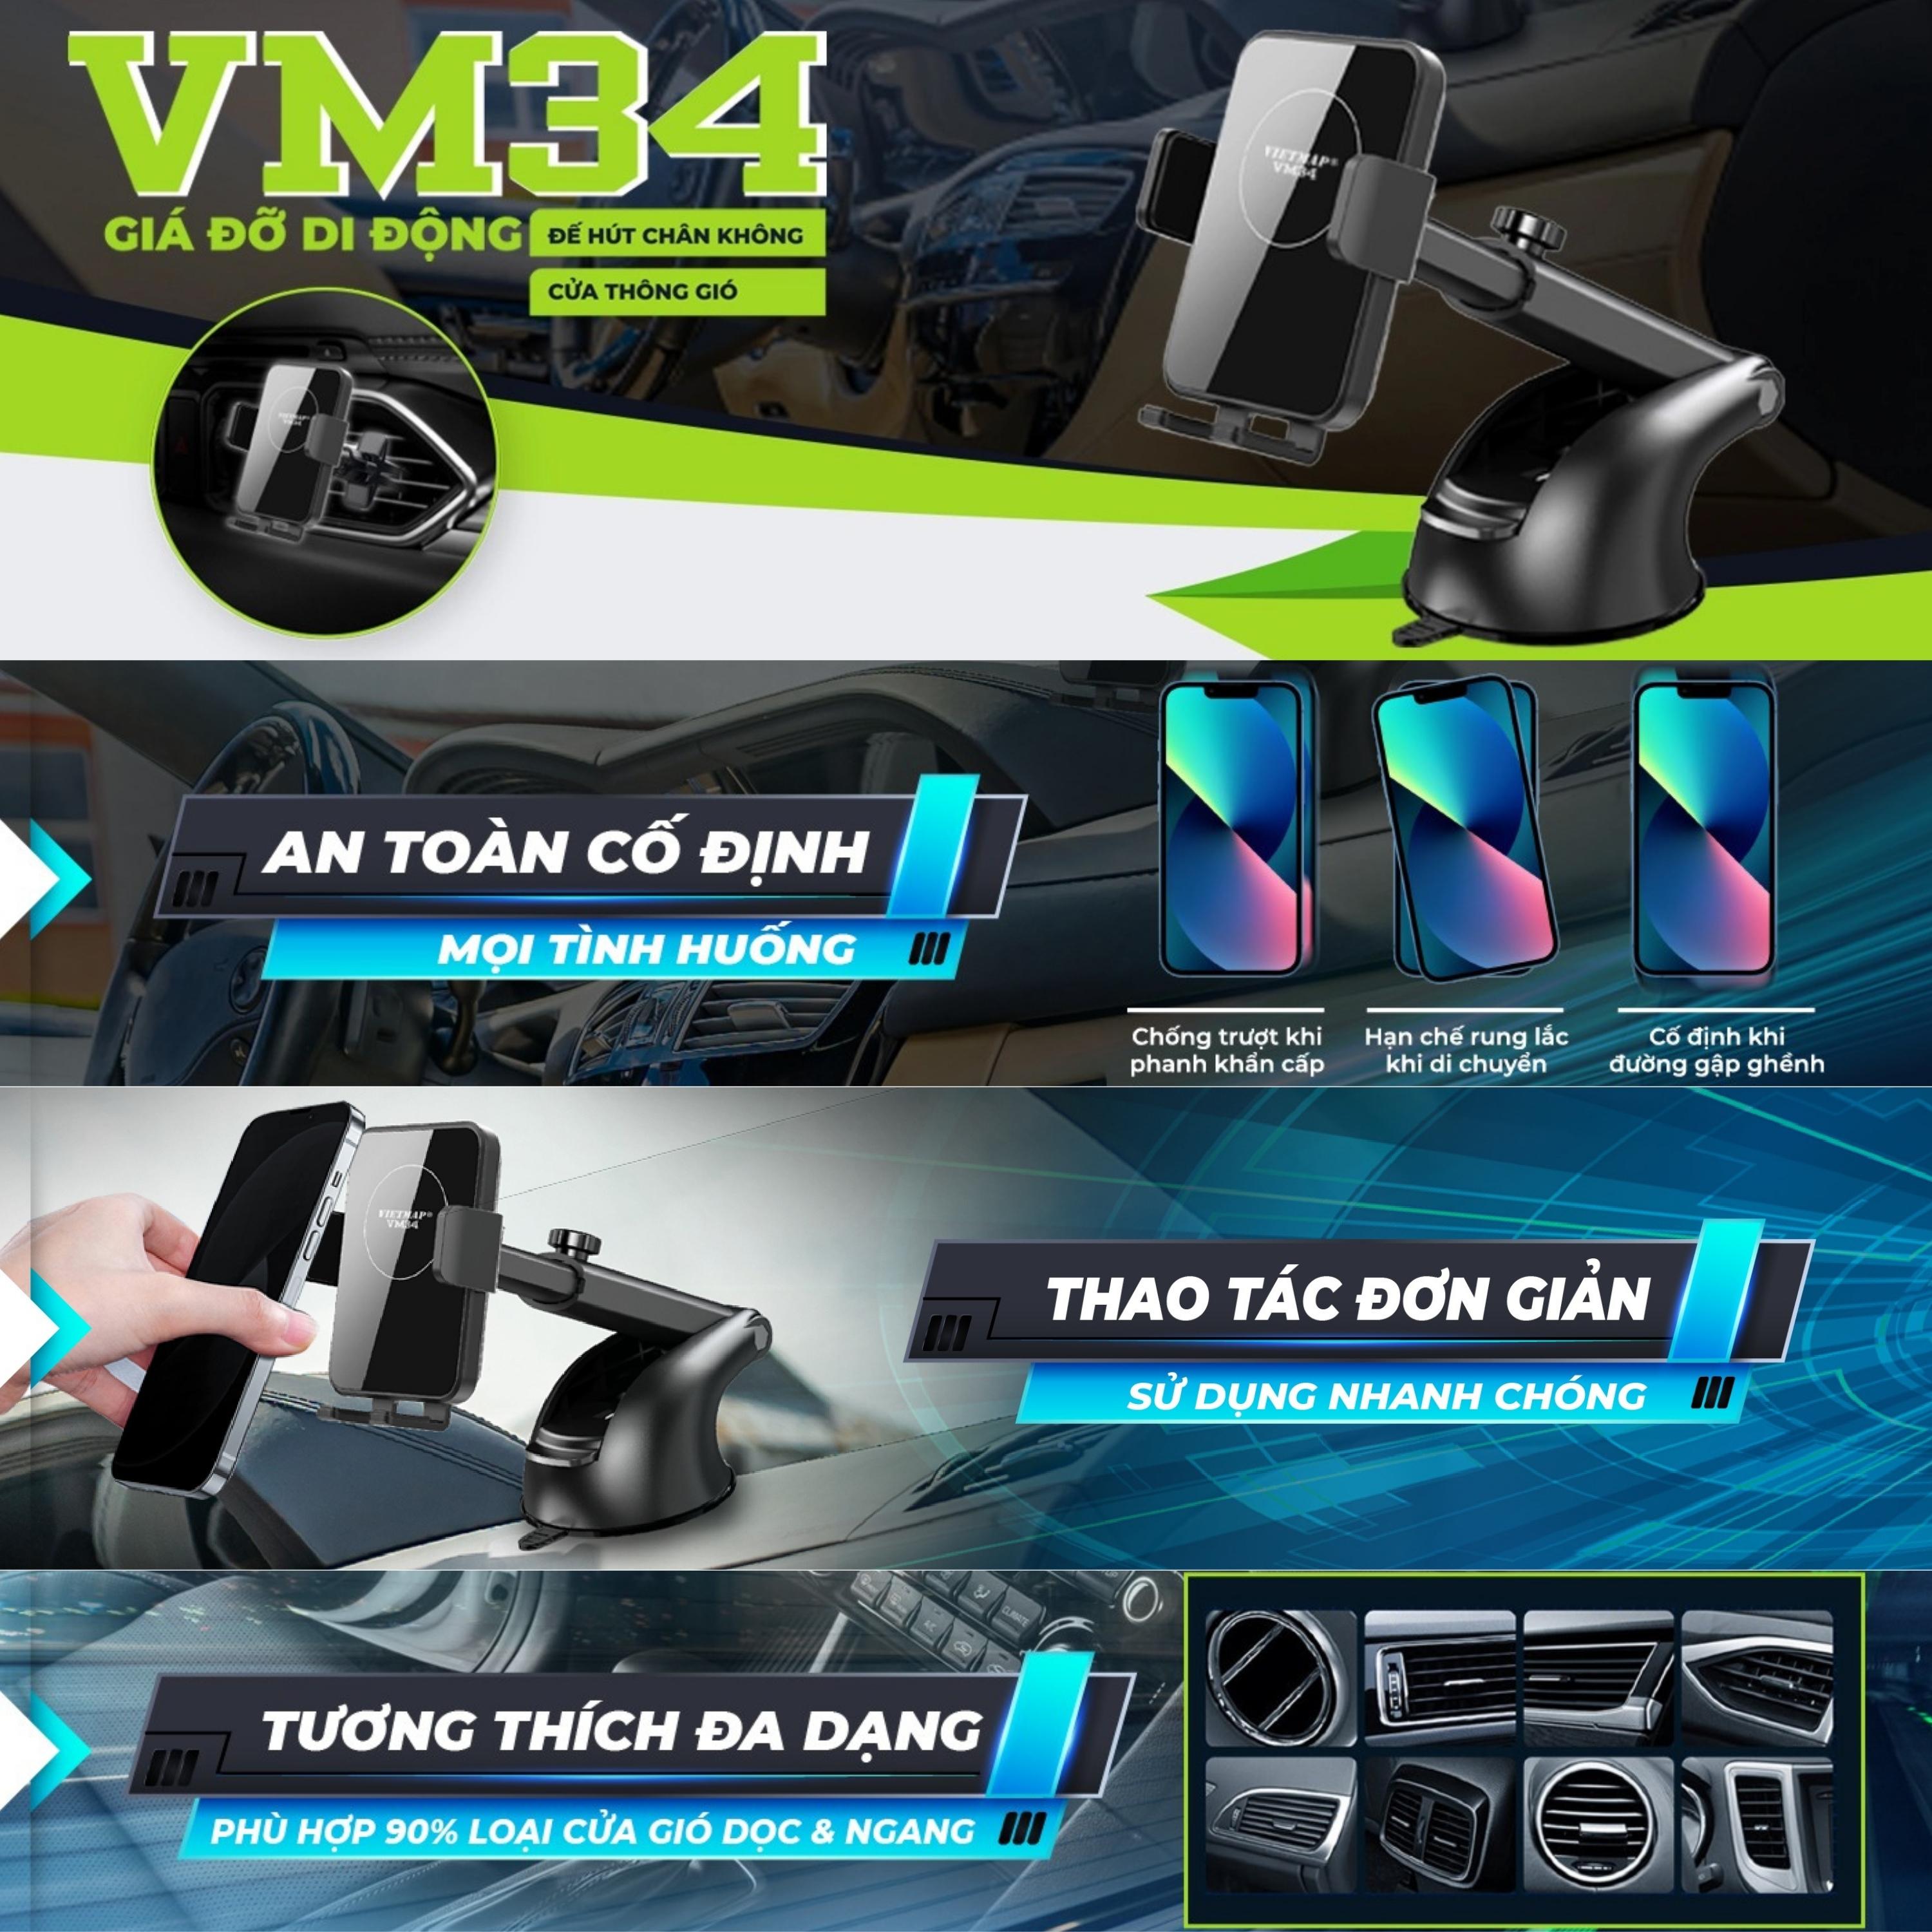 VIETMAP VM34 - Giá đỡ điện thoại di động trên ô tô - Hàng chính hãng